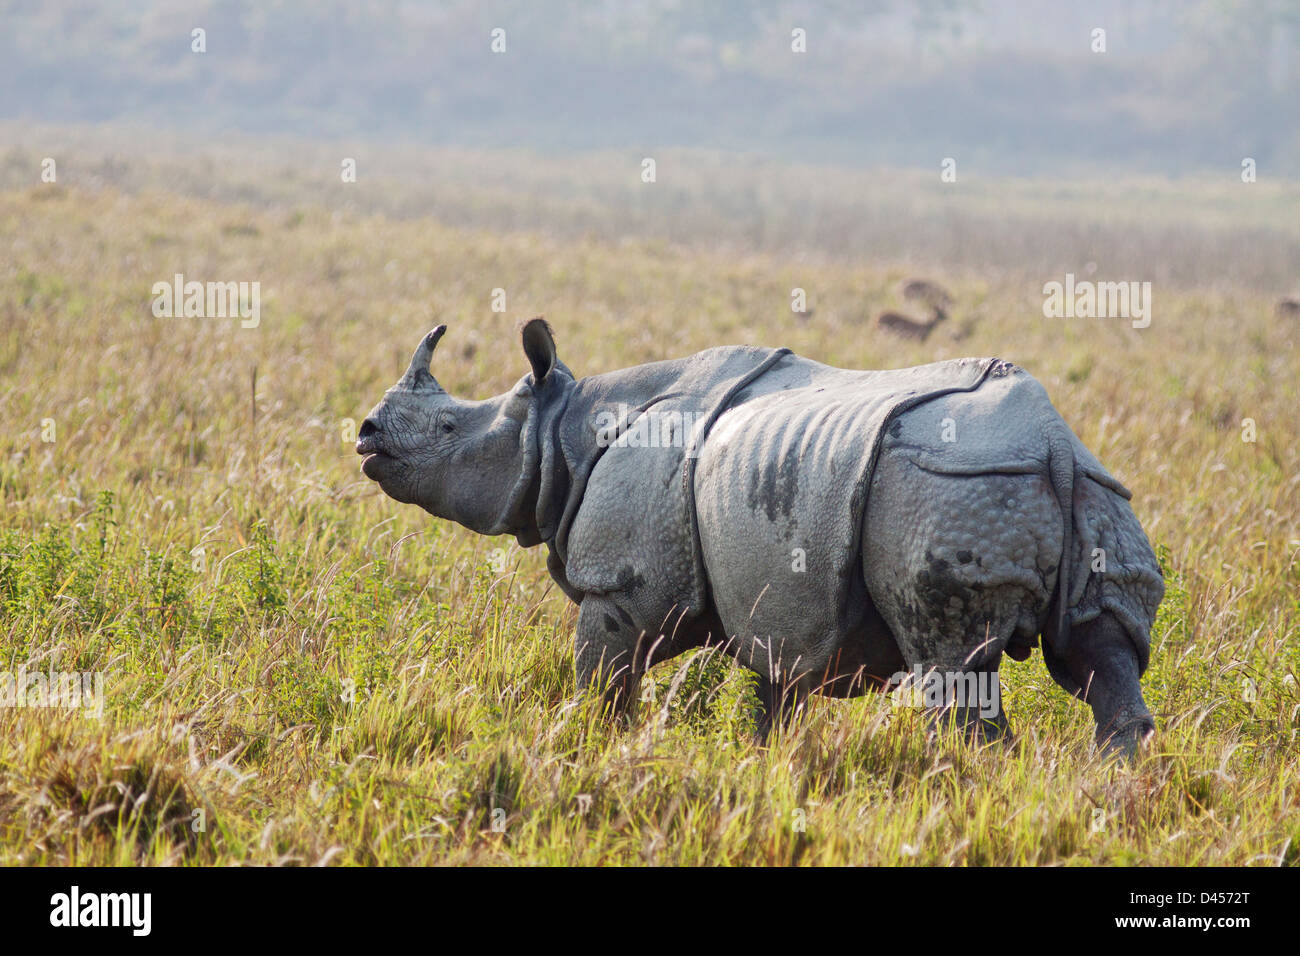 Un rhinocéros unicornes dans la prairie ouverte Banque D'Images